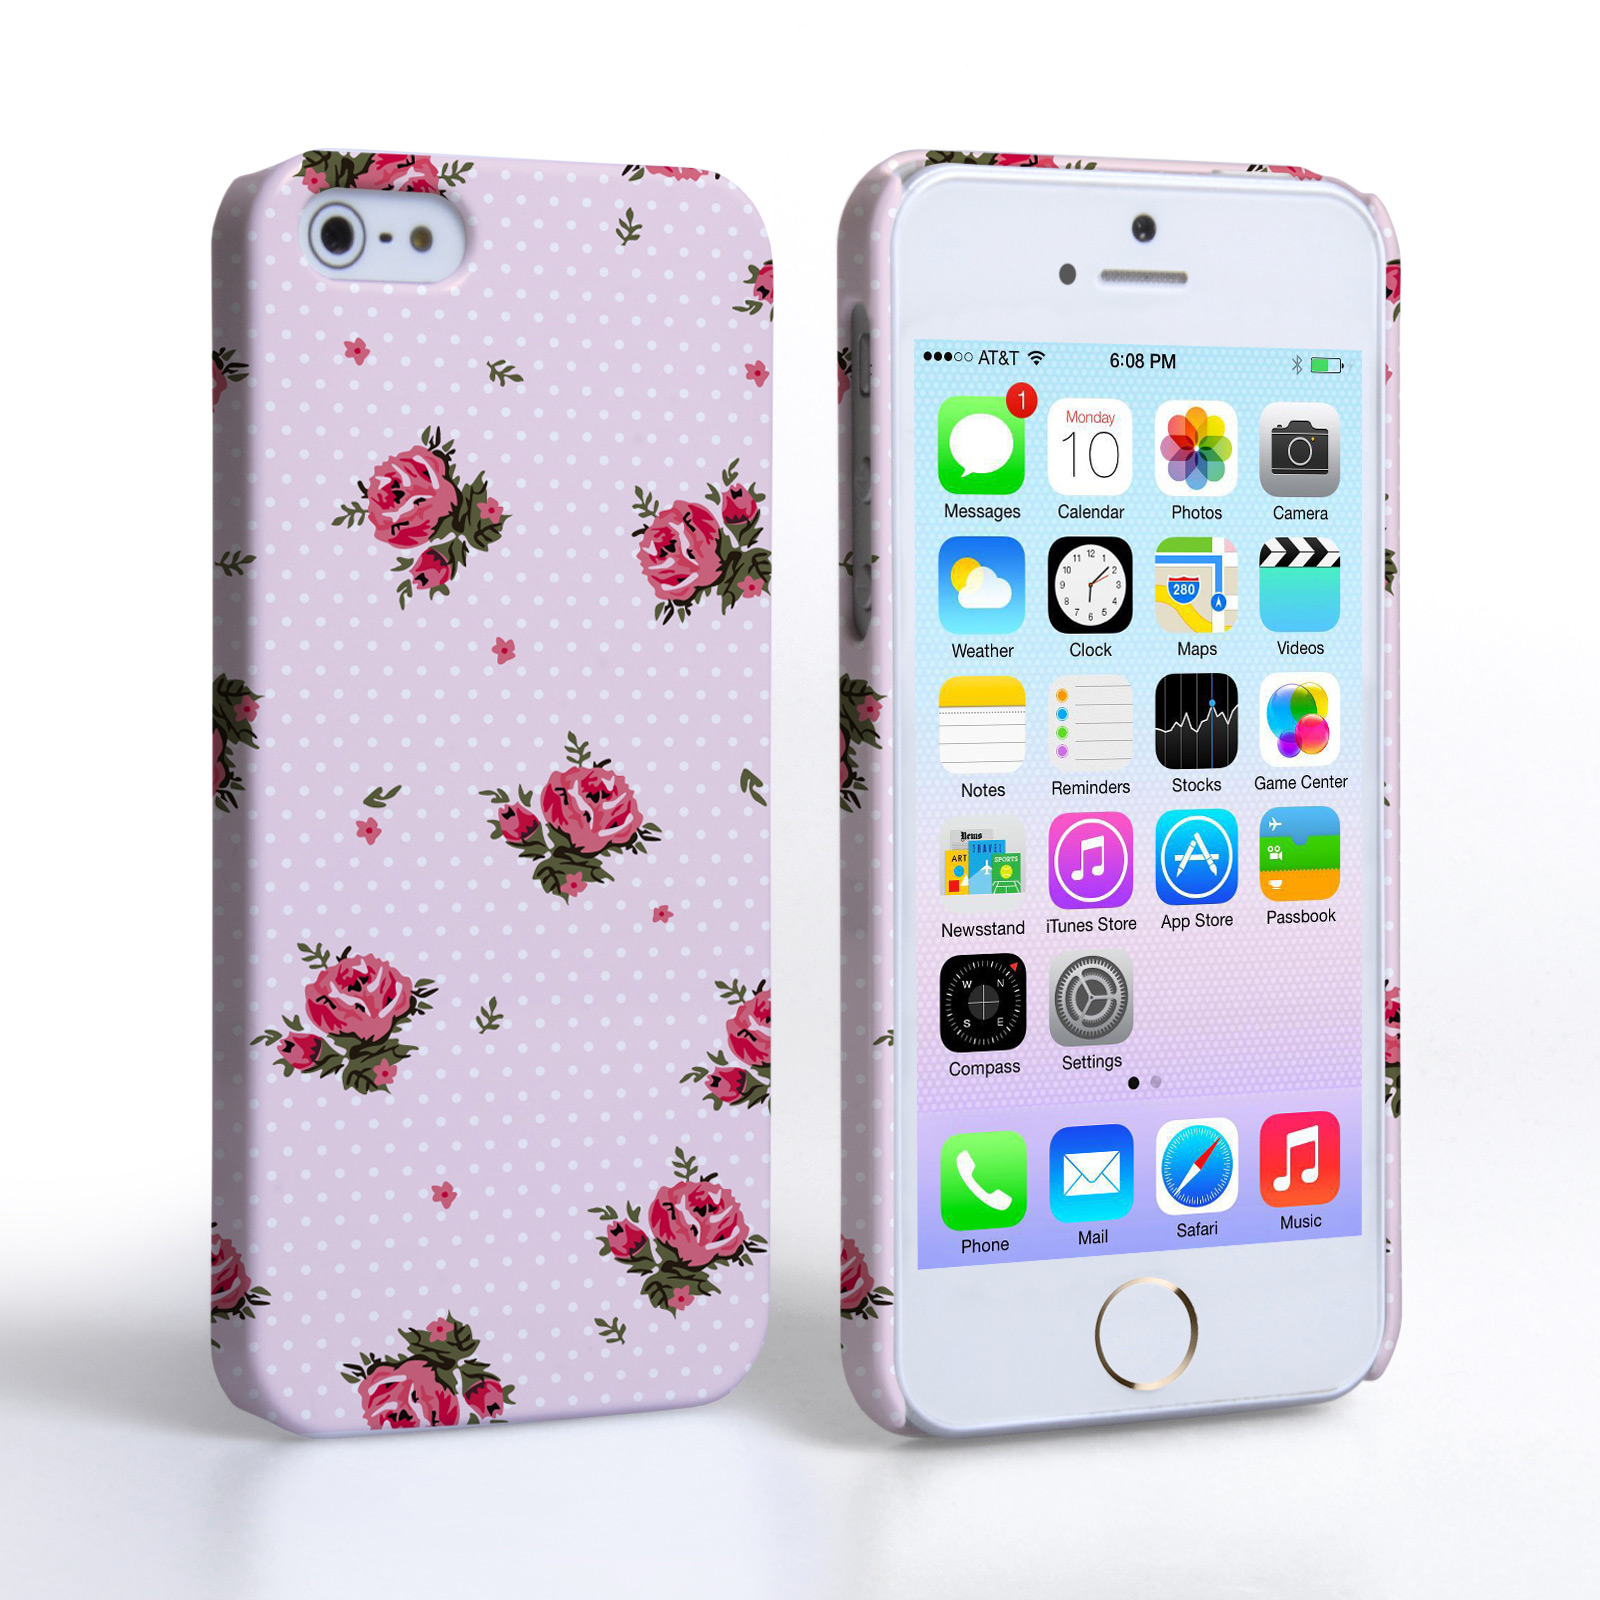 Caseflex iPhone 5 / 5S Vintage Roses Polka Dot Wallpaper Hard Case – Pink